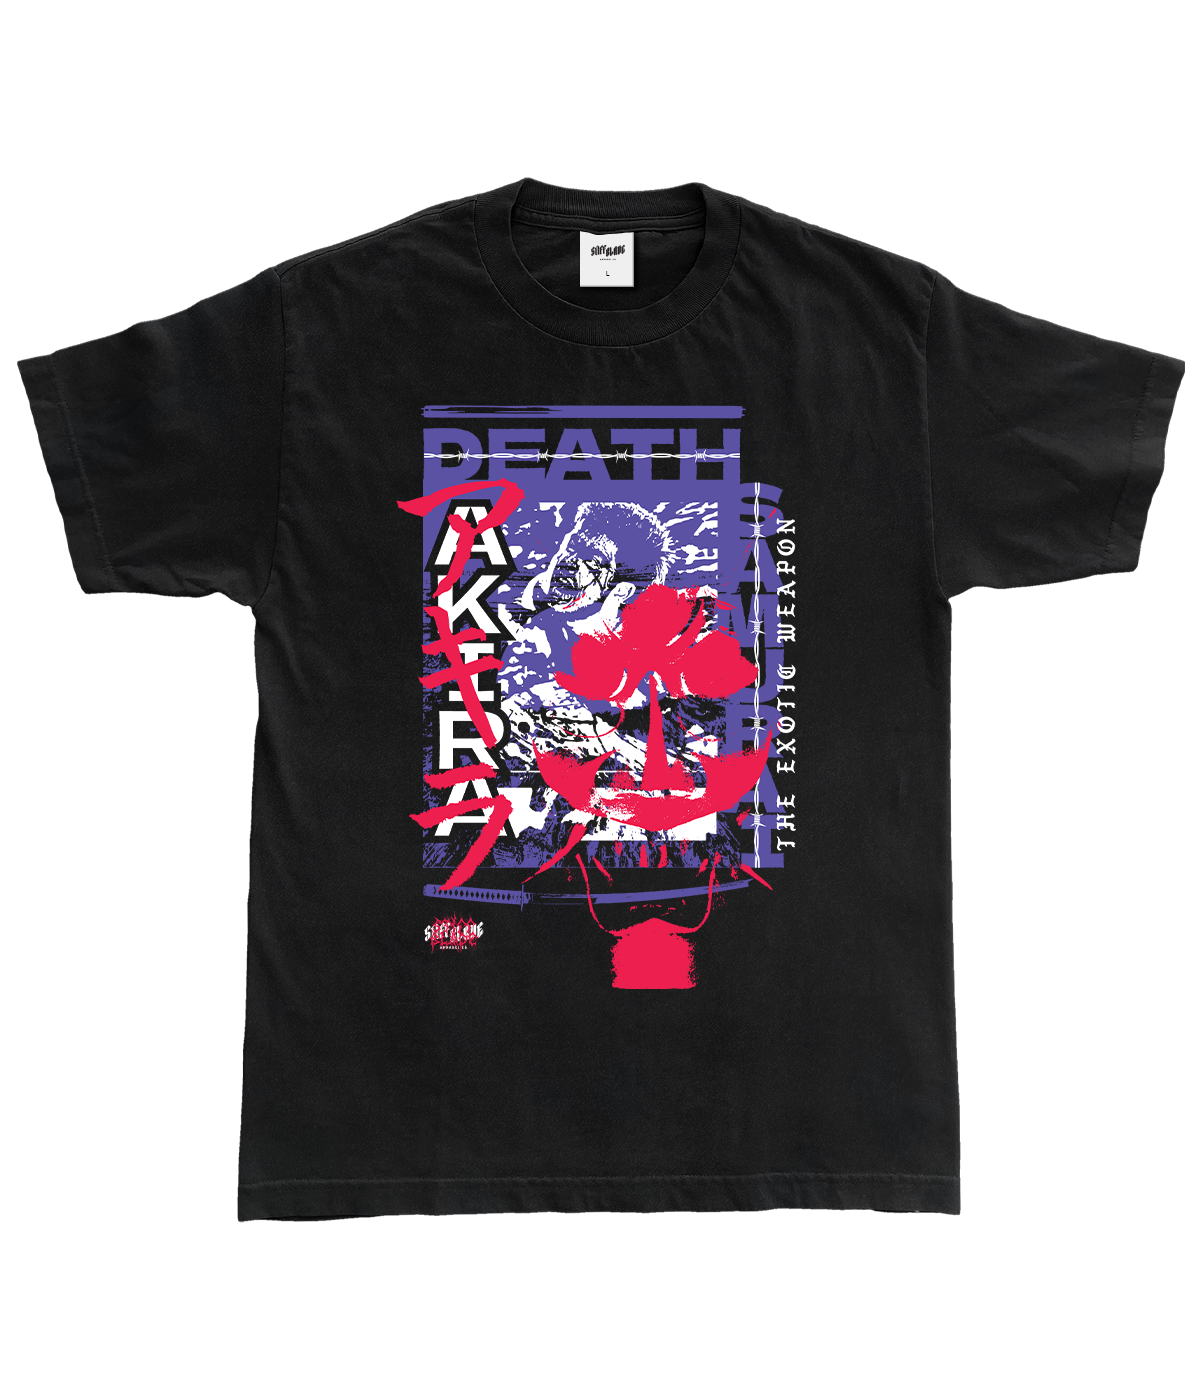 AKIRA - Death Samurai Shirt